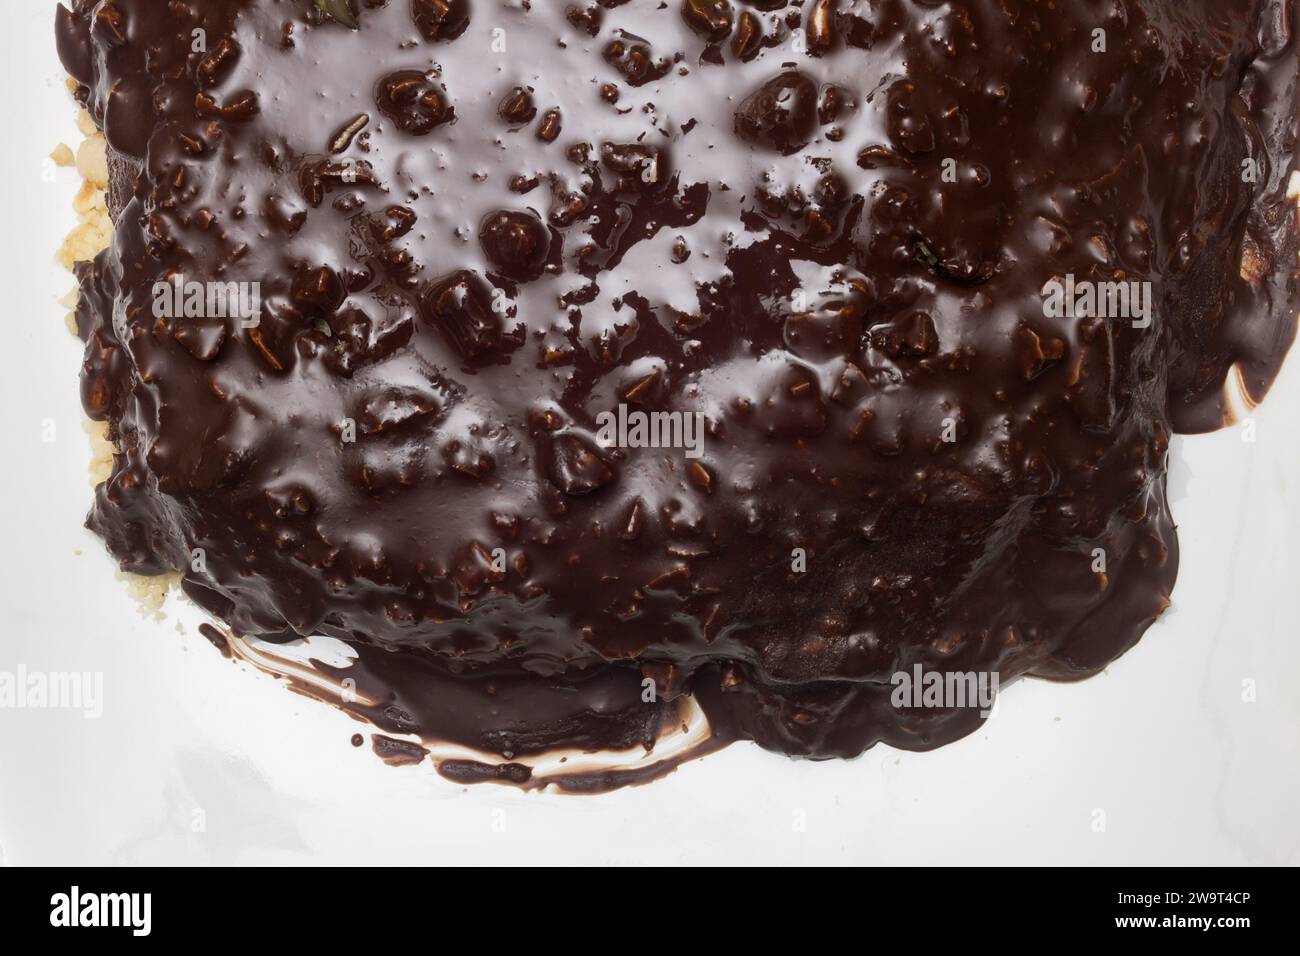 Vista superior de la capa superior de chocolate oscuro con almendras en el borde de un plato de cerámica blanca con espacio de copia. Foto de stock